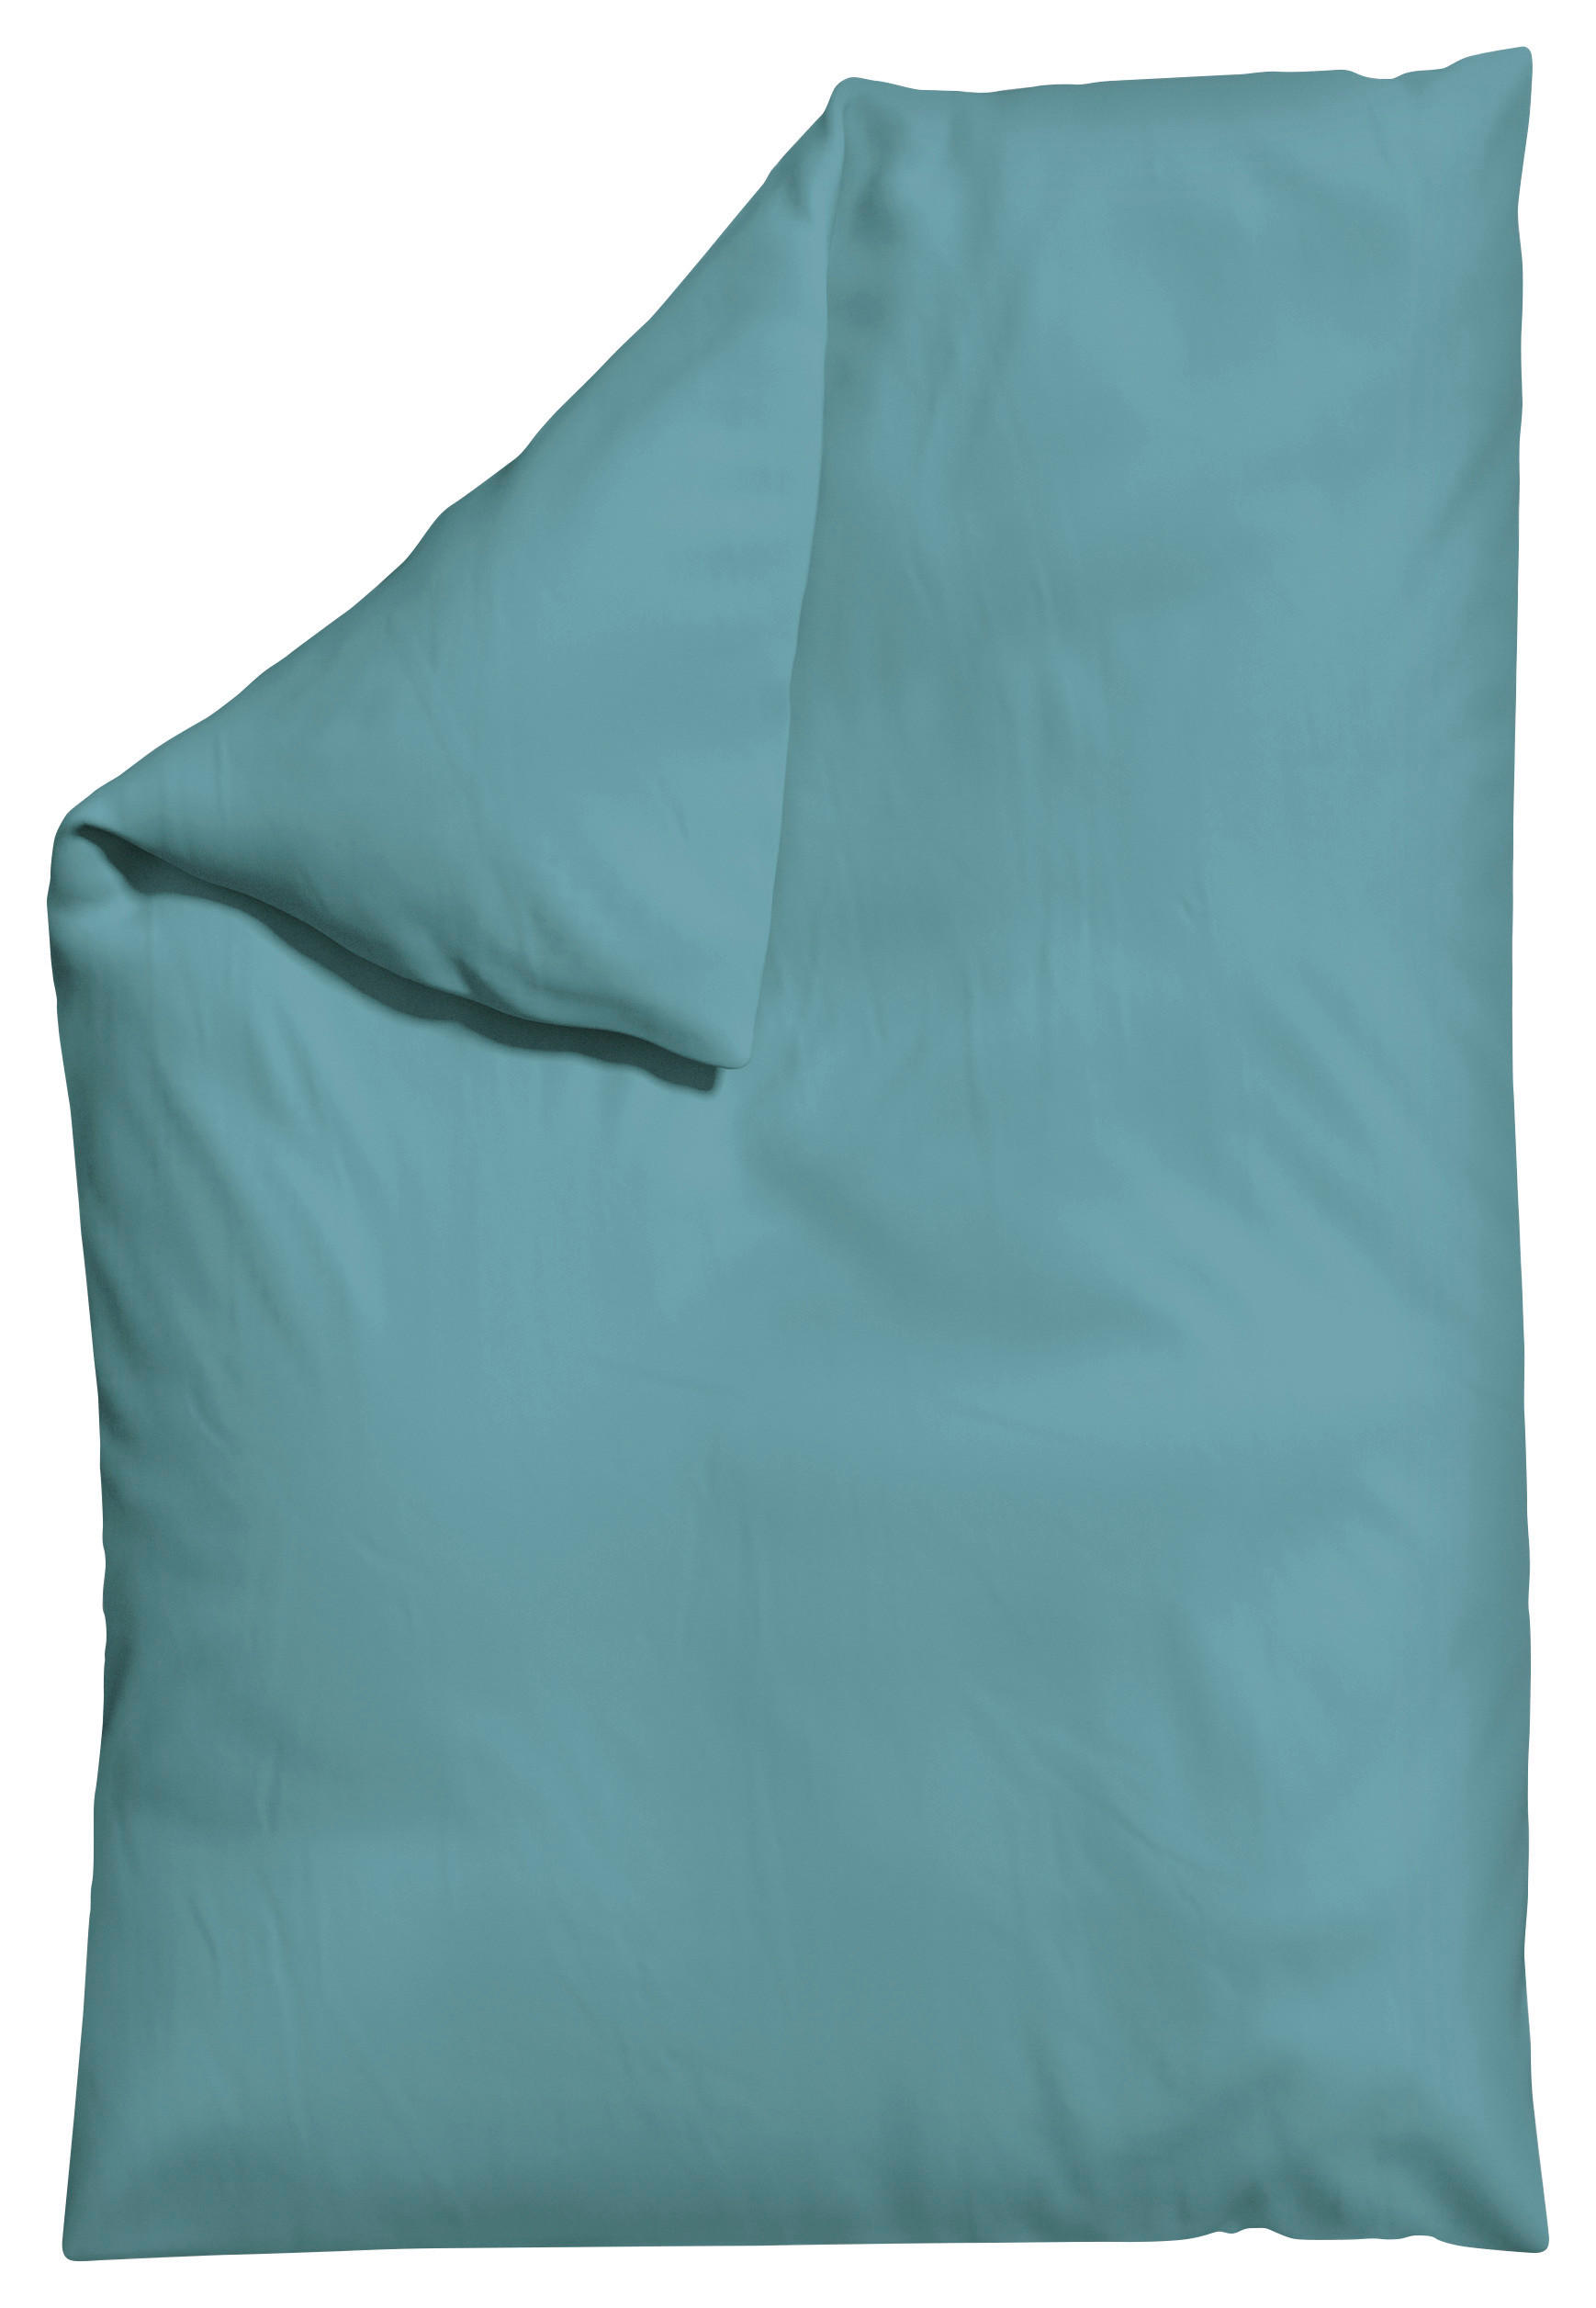 BETTDECKENBEZUG KNITTED JERSEY Jersey  - Pastellblau, Basics, Textil (135-140/200cm) - Schlafgut